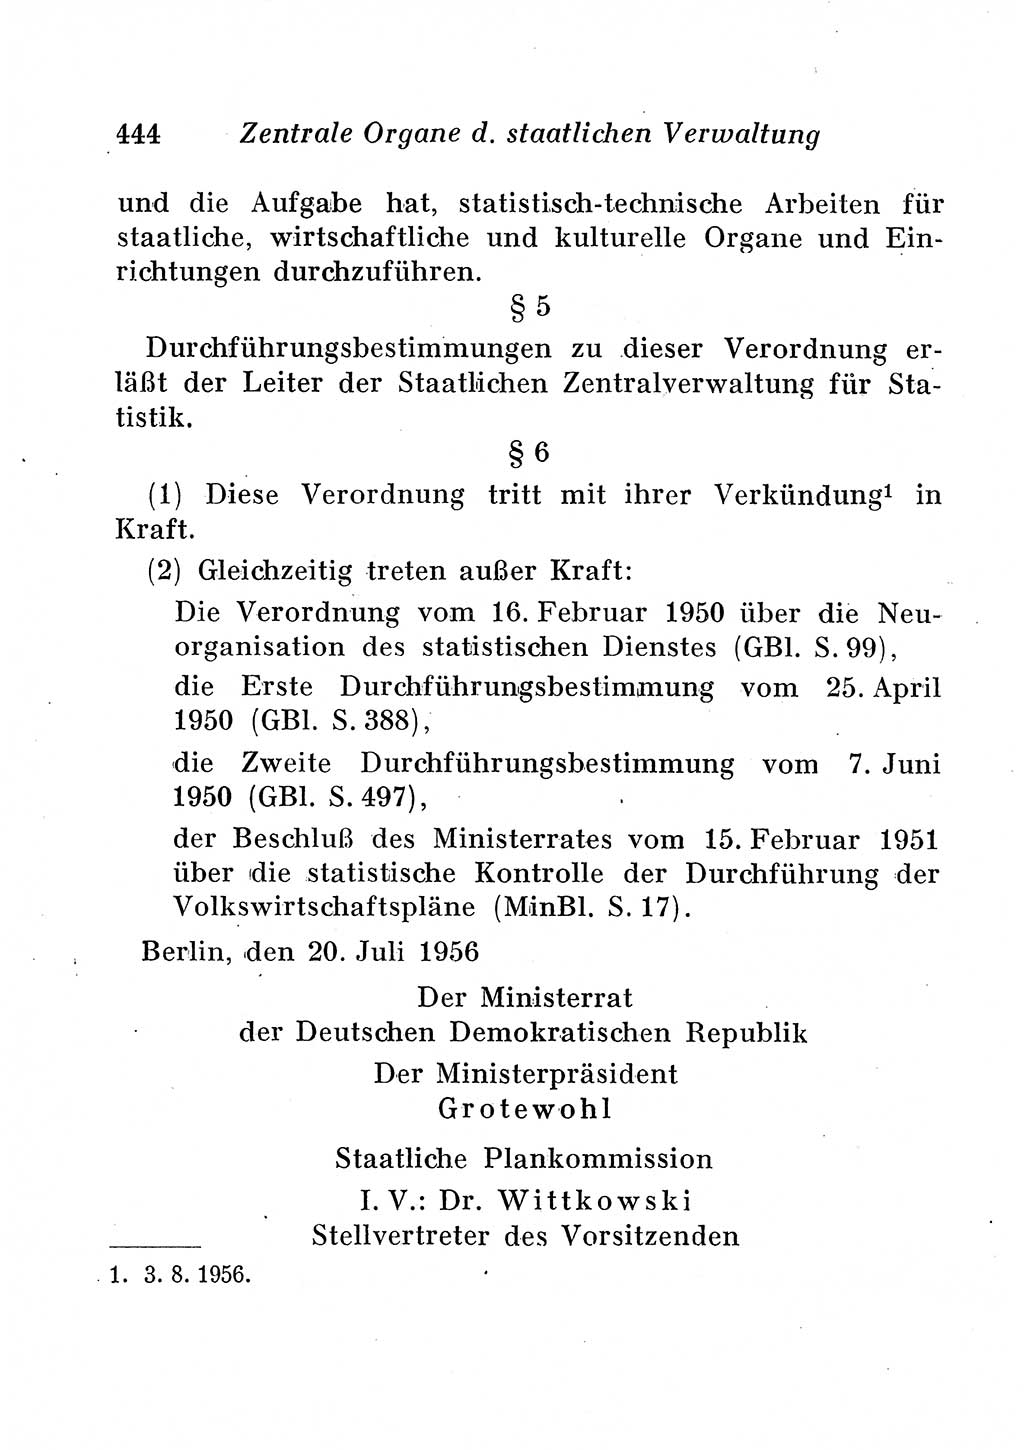 Staats- und verwaltungsrechtliche Gesetze der Deutschen Demokratischen Republik (DDR) 1958, Seite 444 (StVerwR Ges. DDR 1958, S. 444)